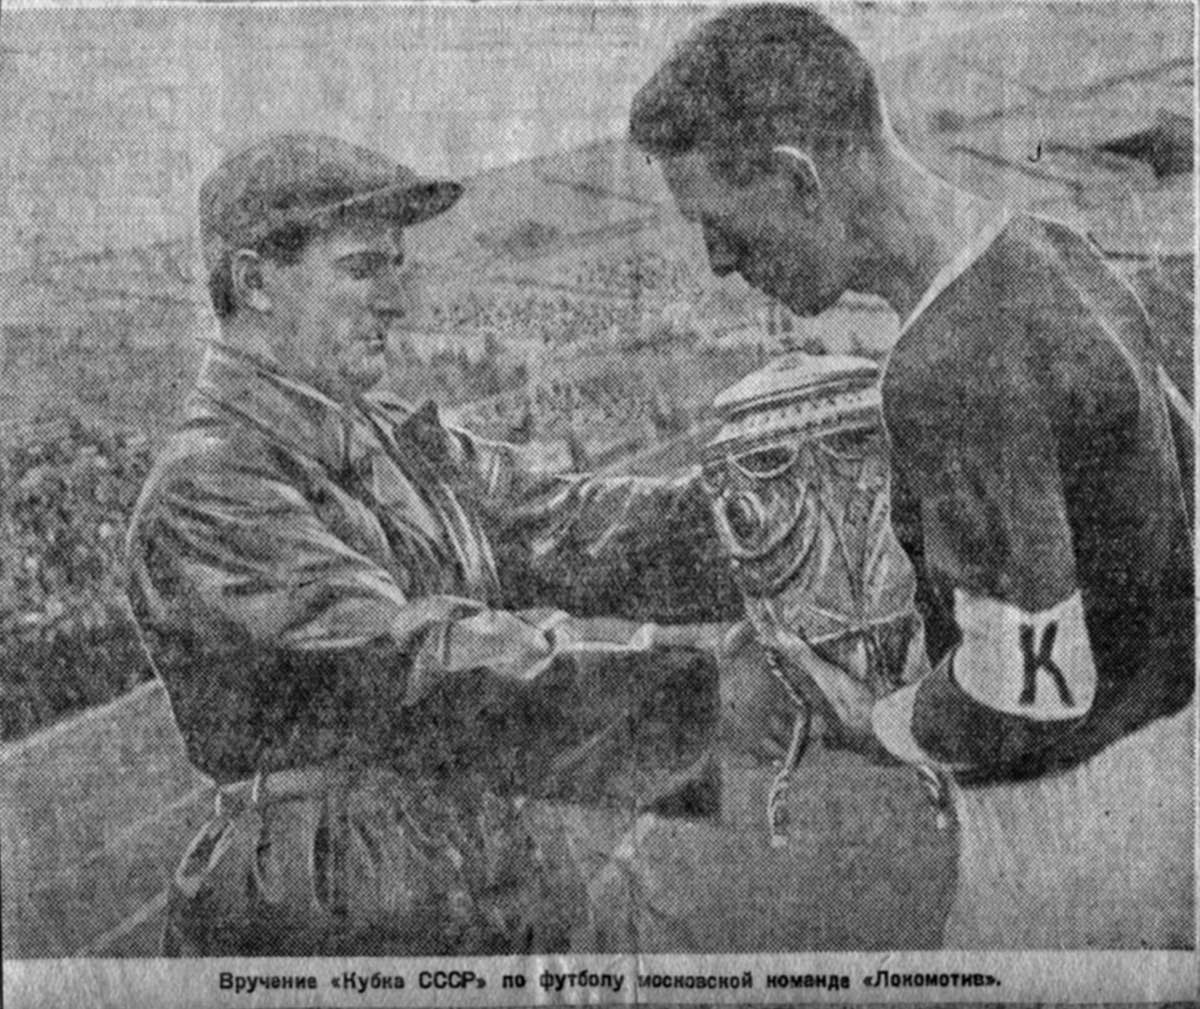 Вручение первого Кубка СССР в 1936 году «Локомотиву». Источник: fclm.ru